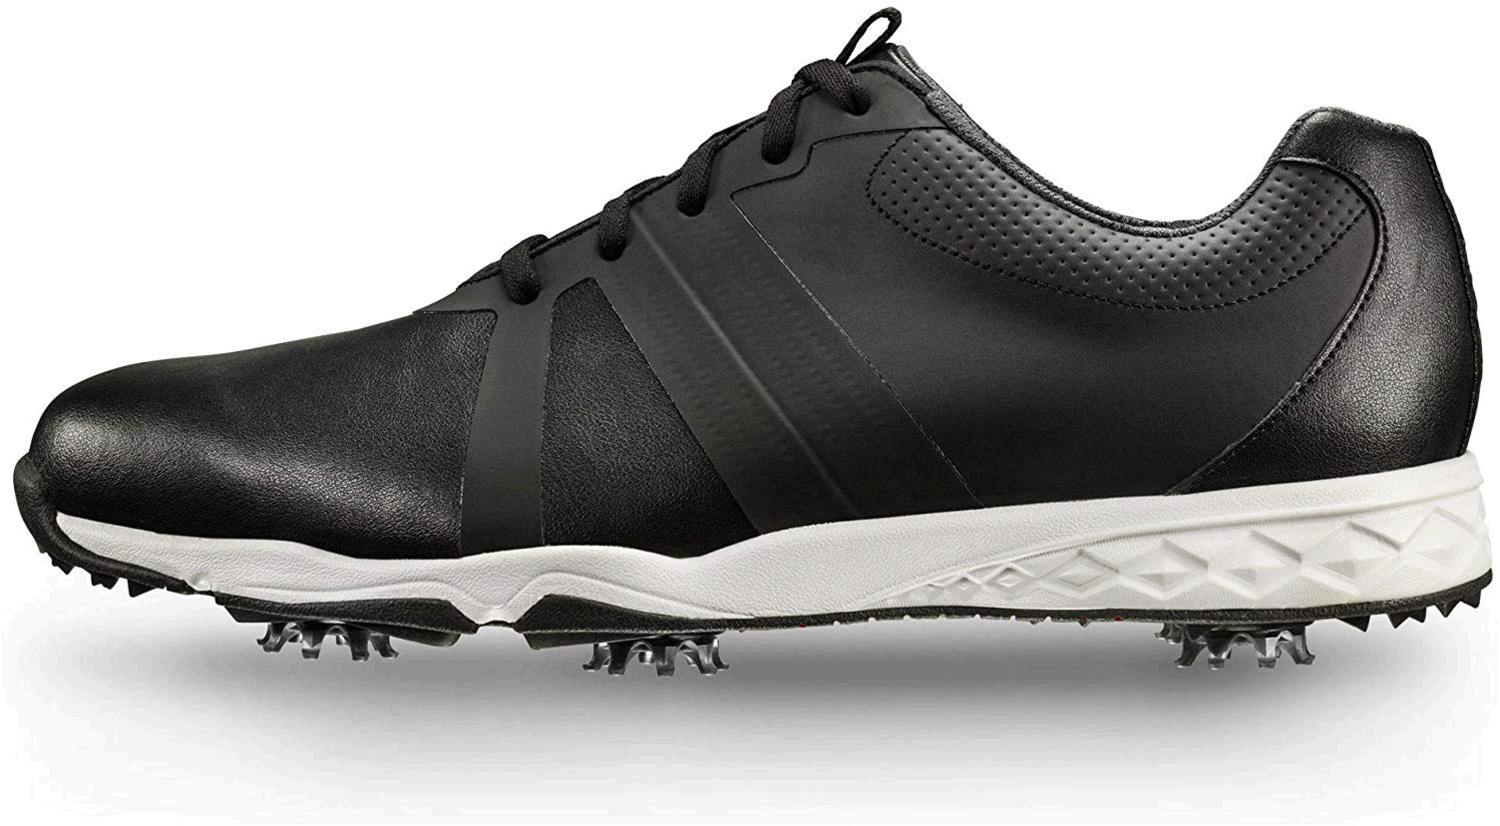 FootJoy Men's Energize-Previous Season Style Golf Shoes, Black, Size 12 ...